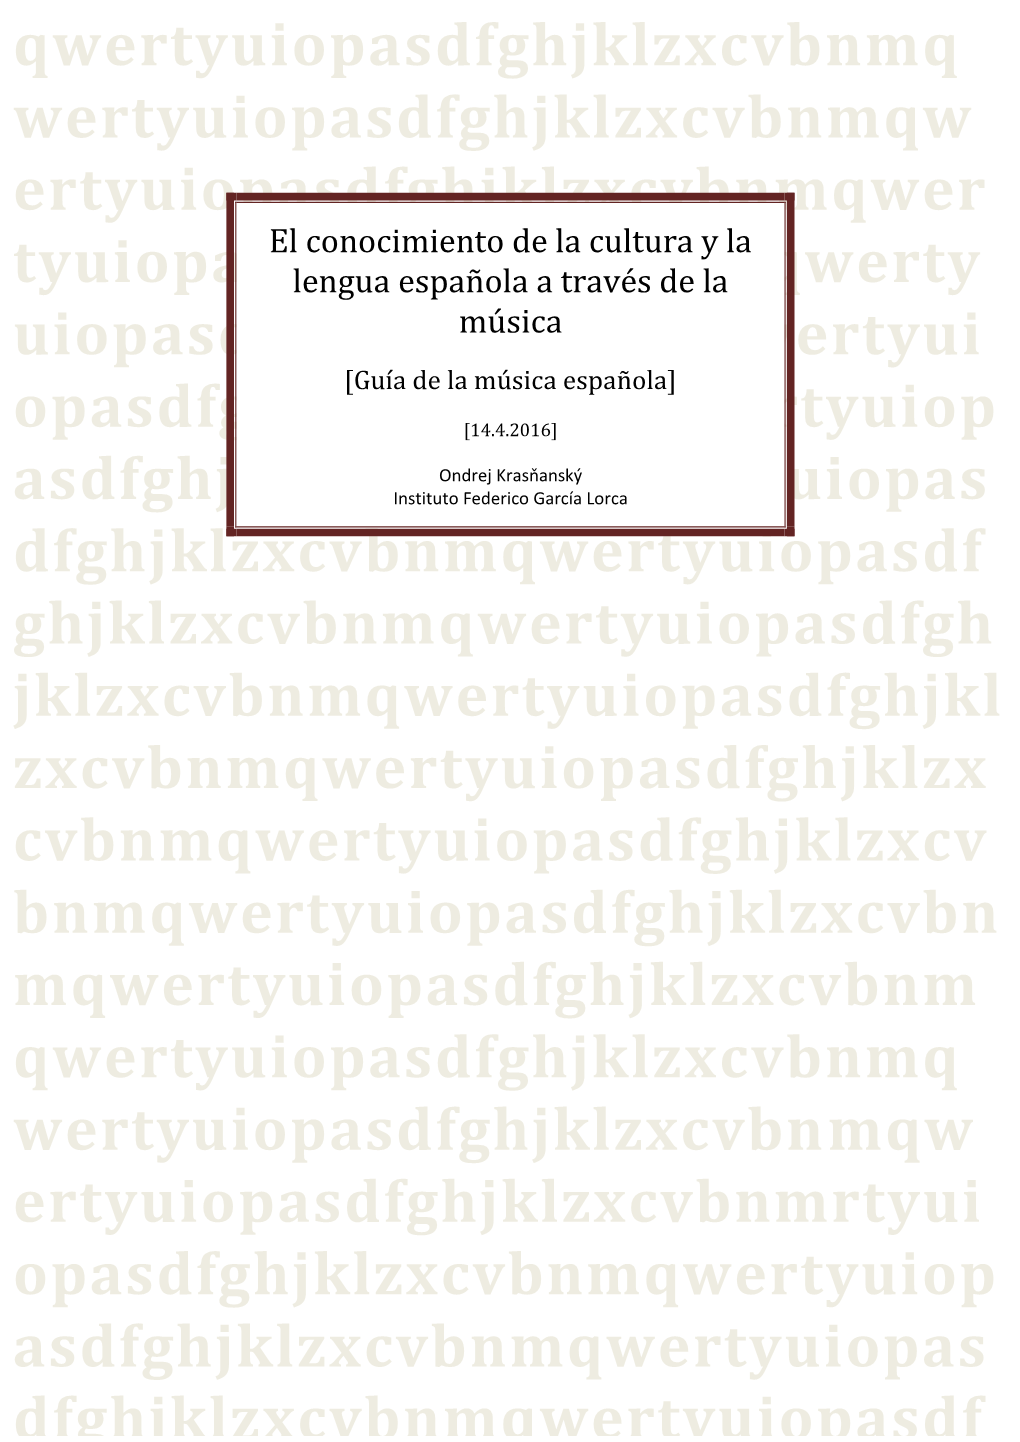 El Conocimiento De La Cultura Y La Lengua Española a Través De La